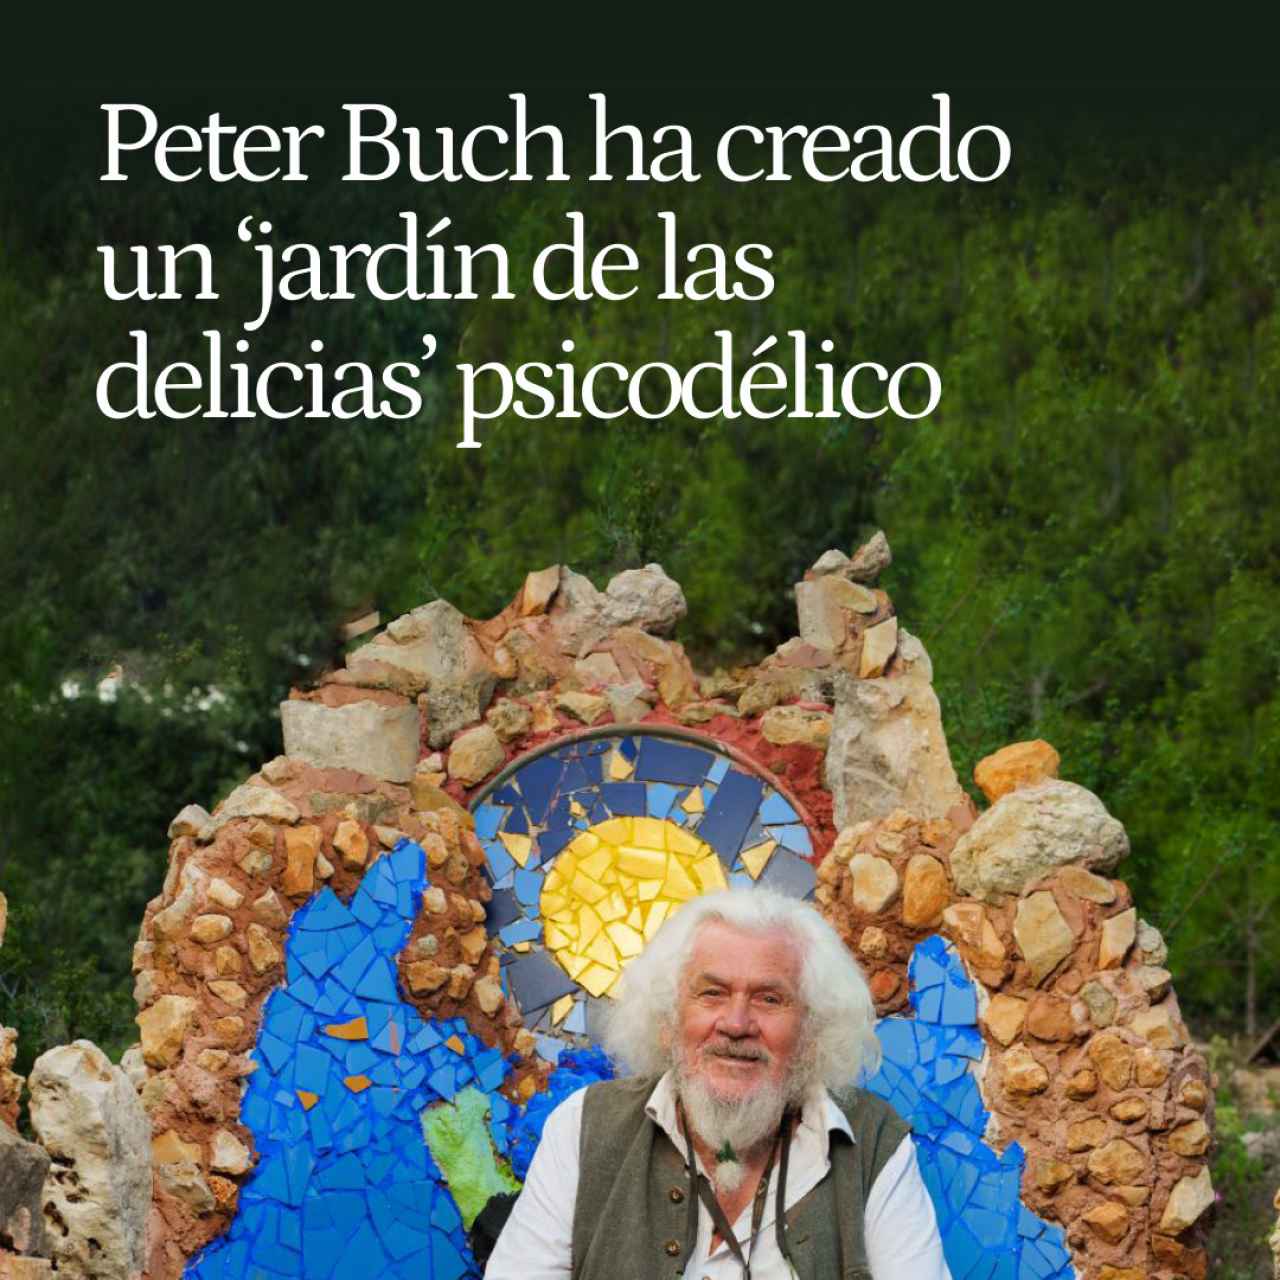 Mi tarde de 'delirio' con Peter Buch, el alemán de 85 años que ha creado un 'jardín de las delicias' psicodélico en Valencia